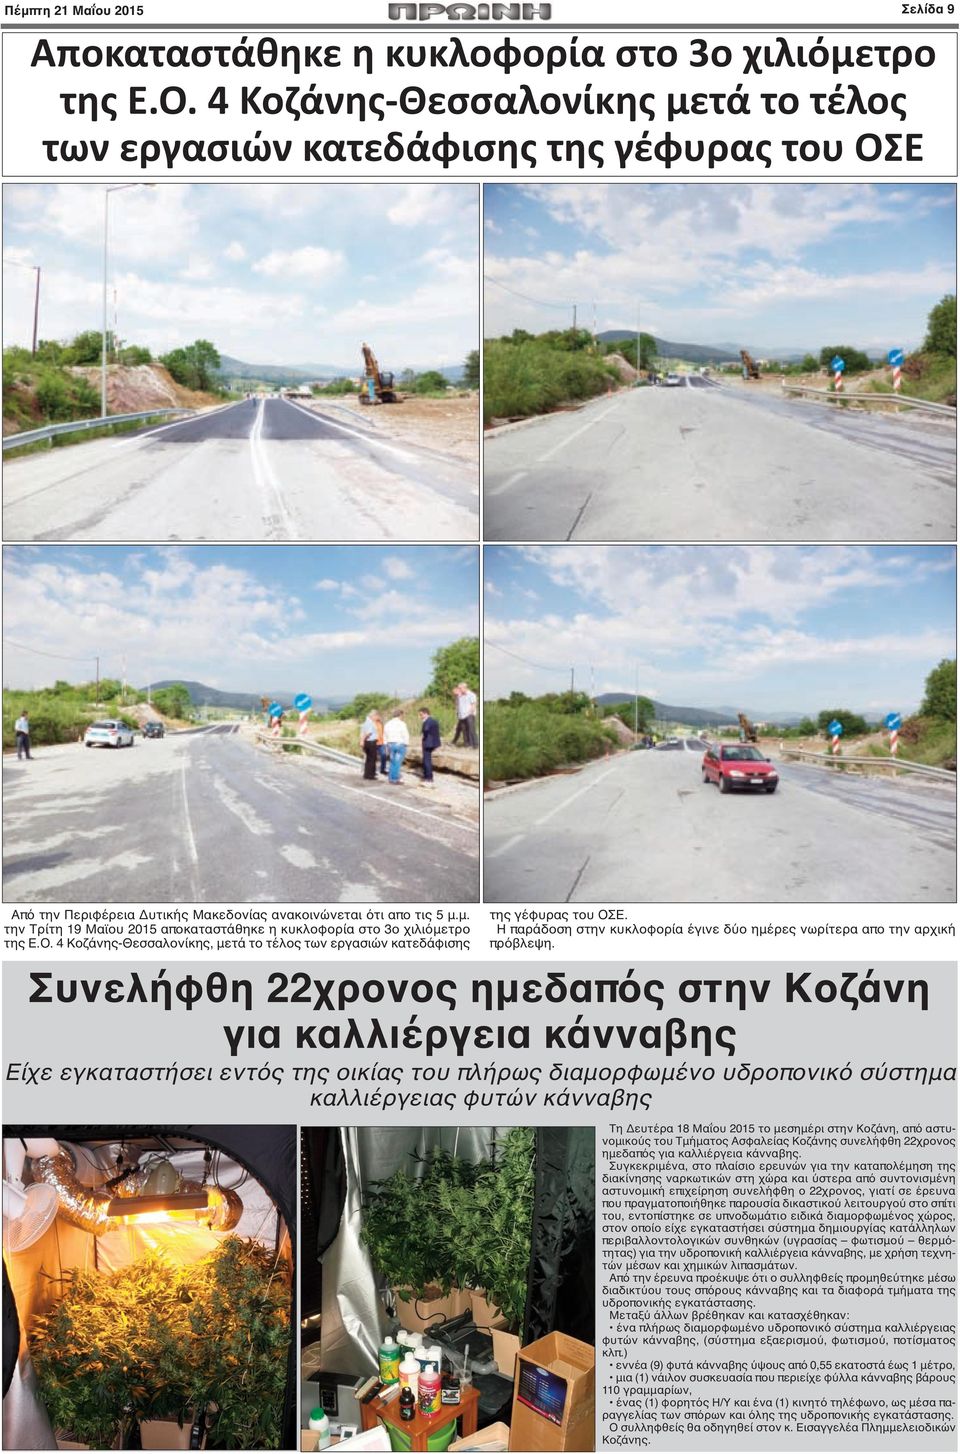 Ο. 4 Κοζάνης-Θεσσαλονίκης, μετά το τέλος των εργασιών κατεδάφισης της γέφυρας του ΟΣΕ. Η παράδοση στην κυκλοφορία έγινε δύο ημέρες νωρίτερα απο την αρχική πρόβλεψη.